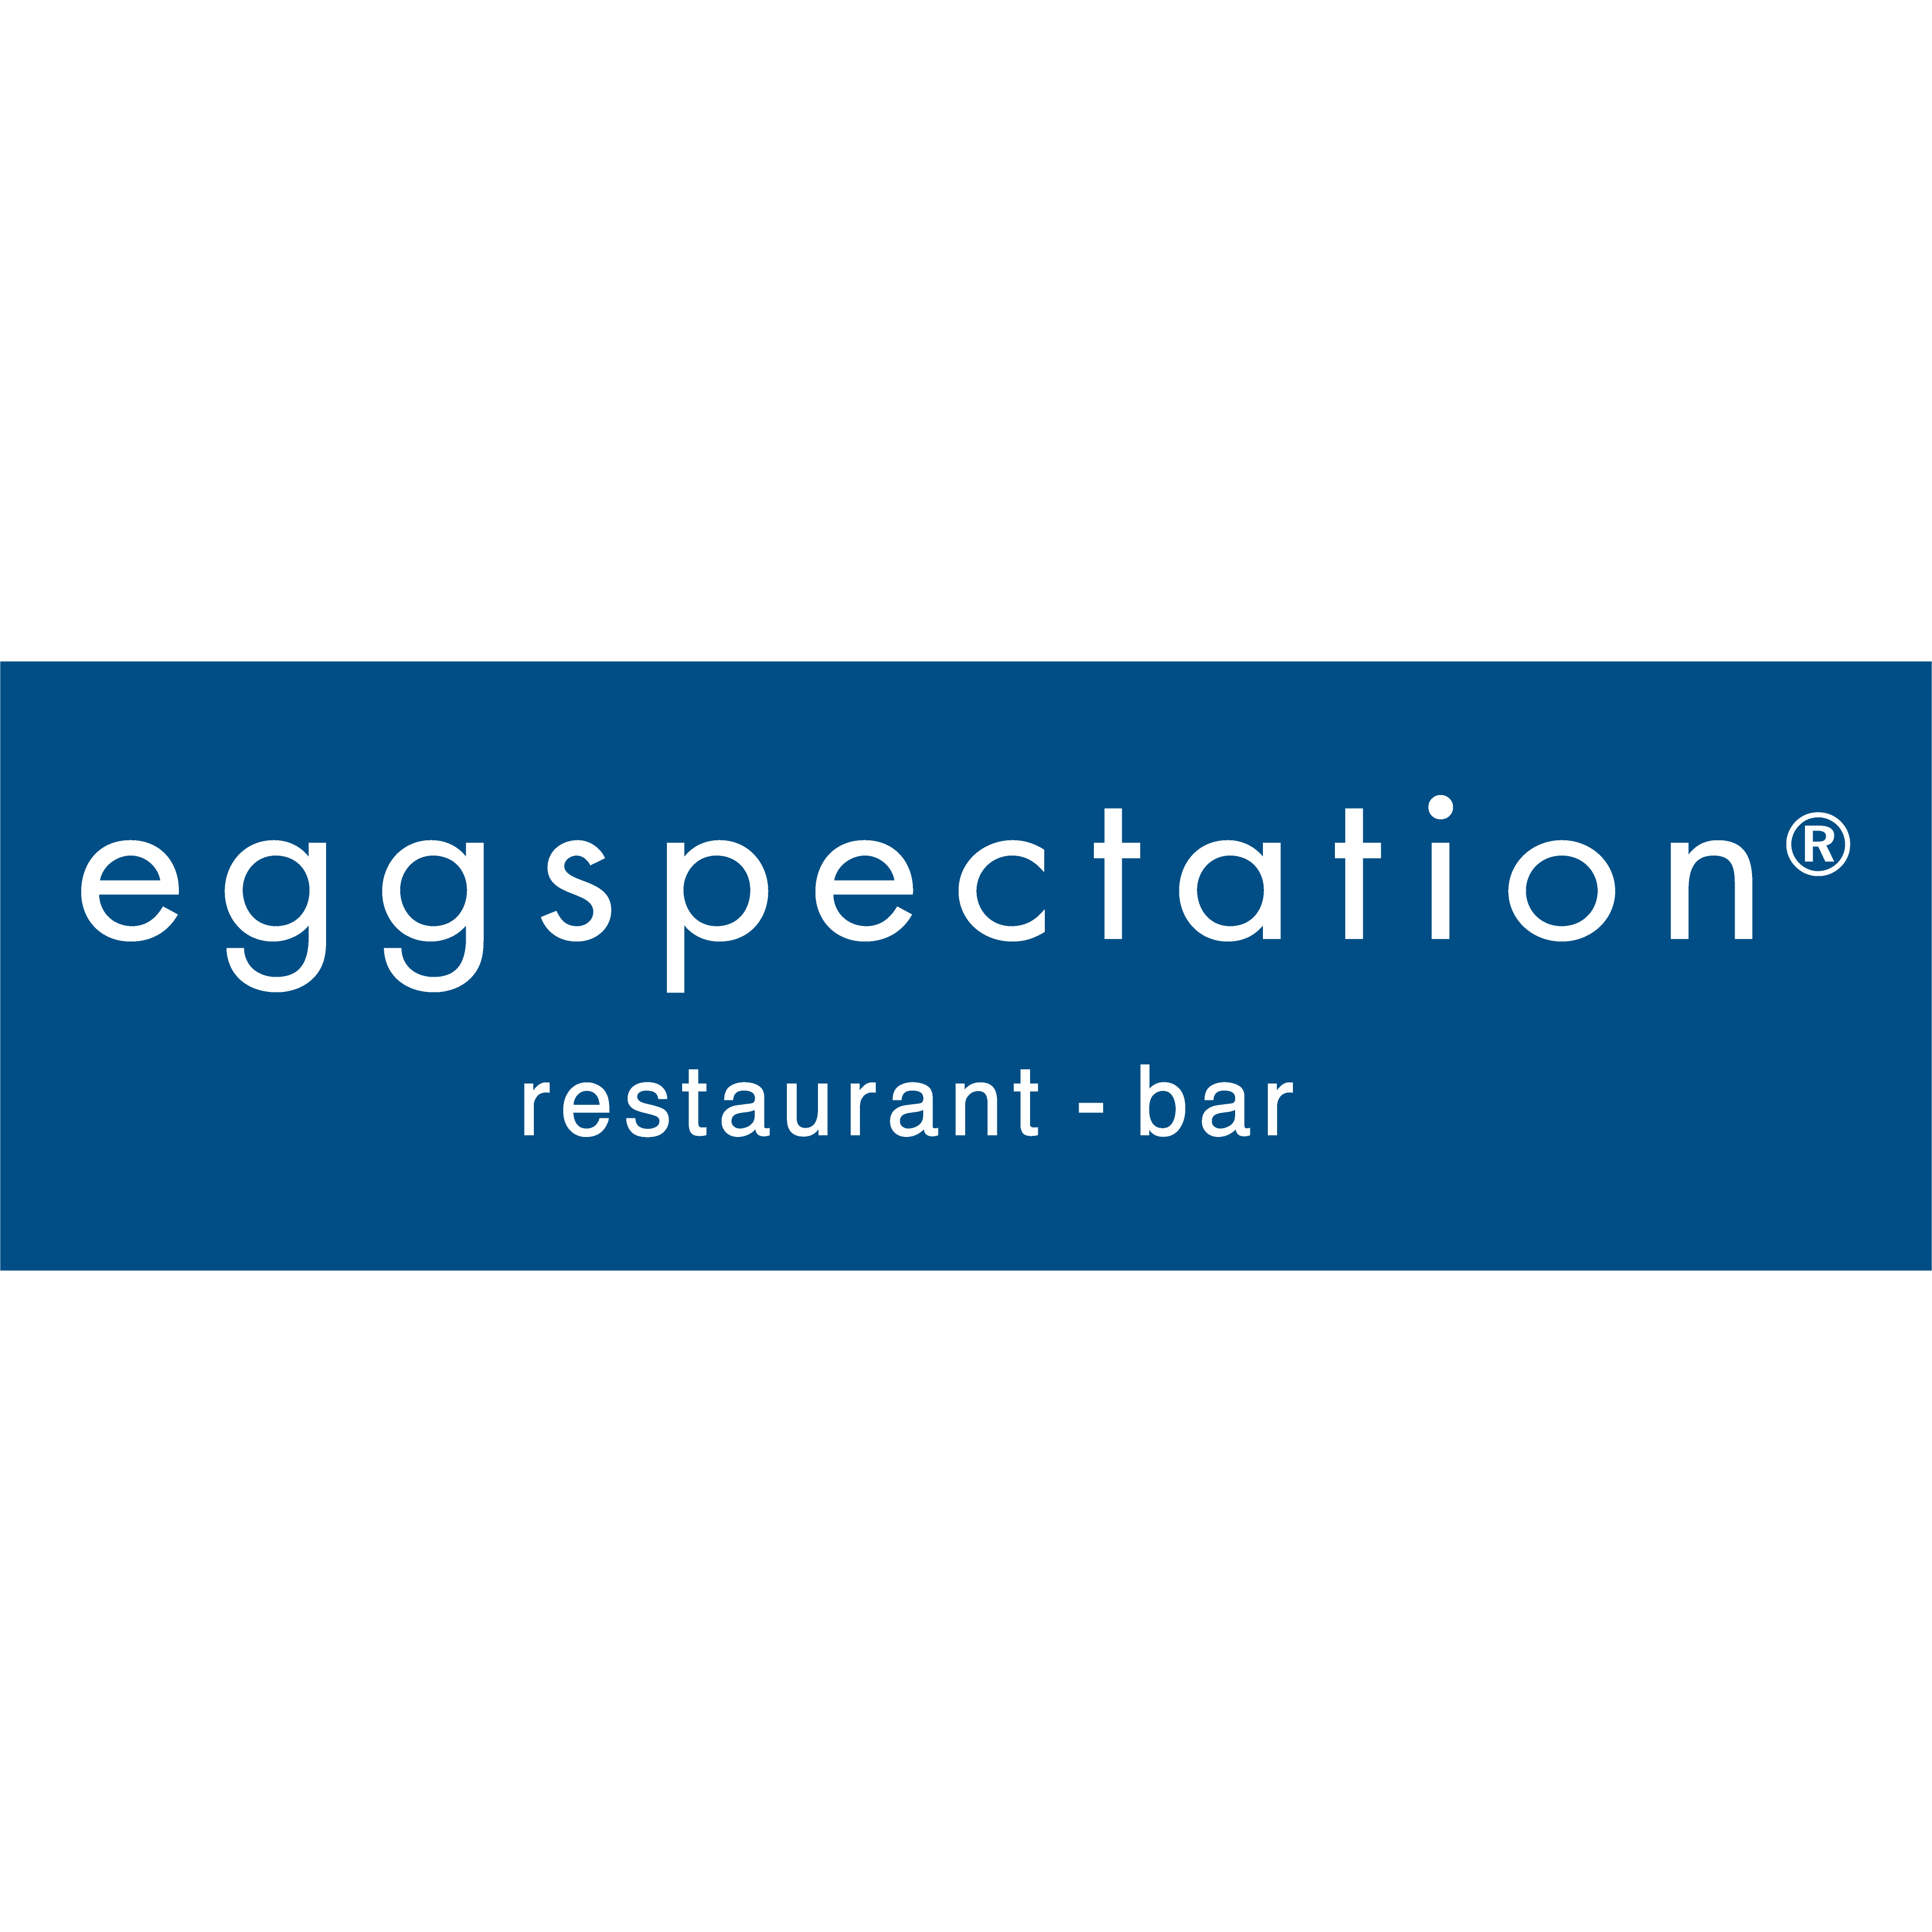 eggspectation - Christiana - Newark, DE 19713 - (302)842-2515 | ShowMeLocal.com